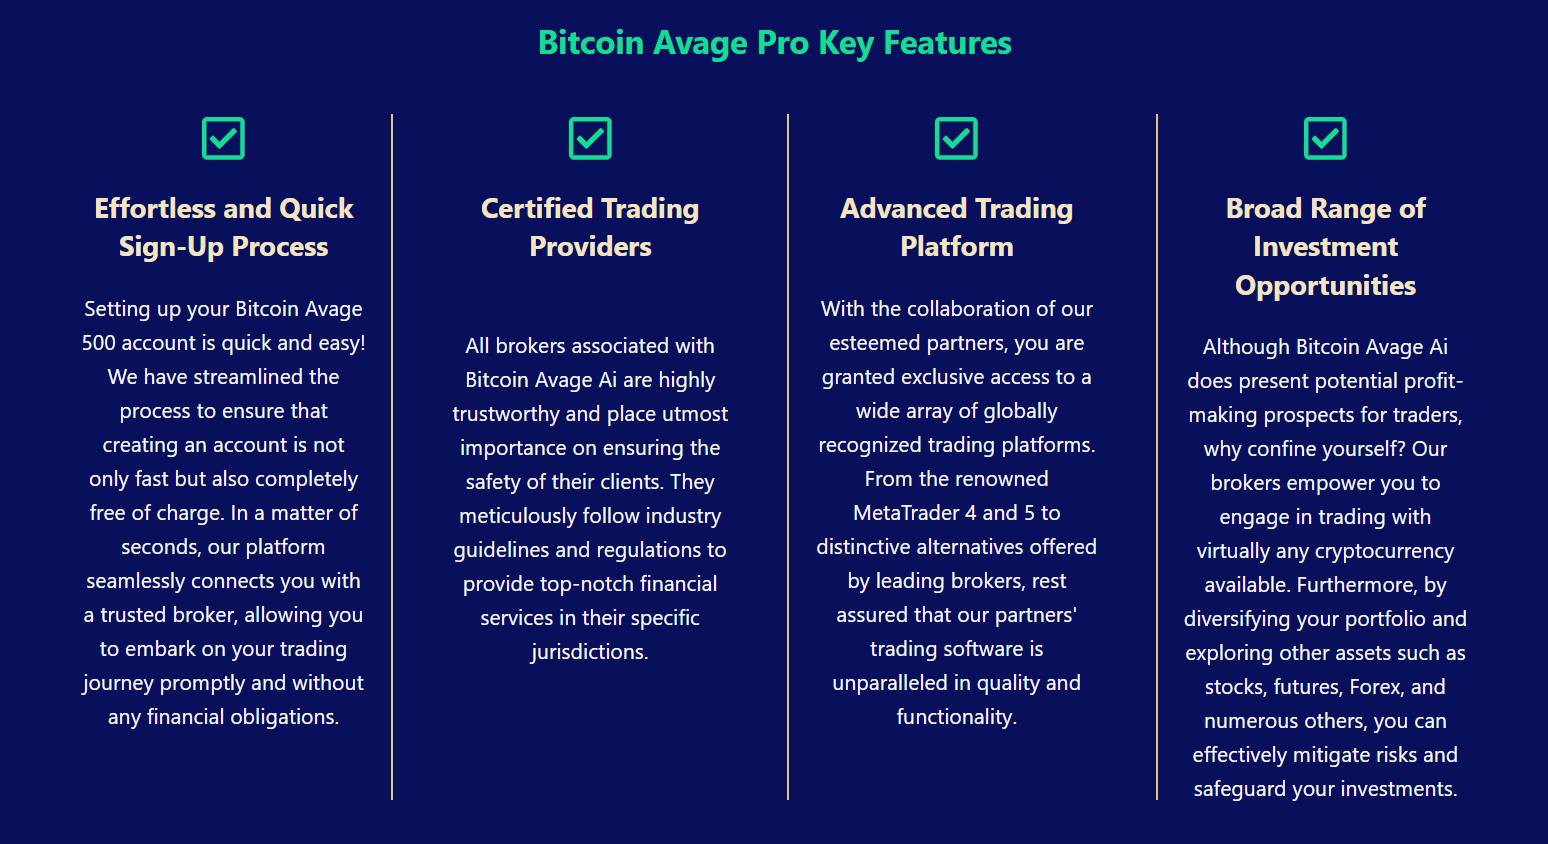 Bitcoin Avage Ai - características clave